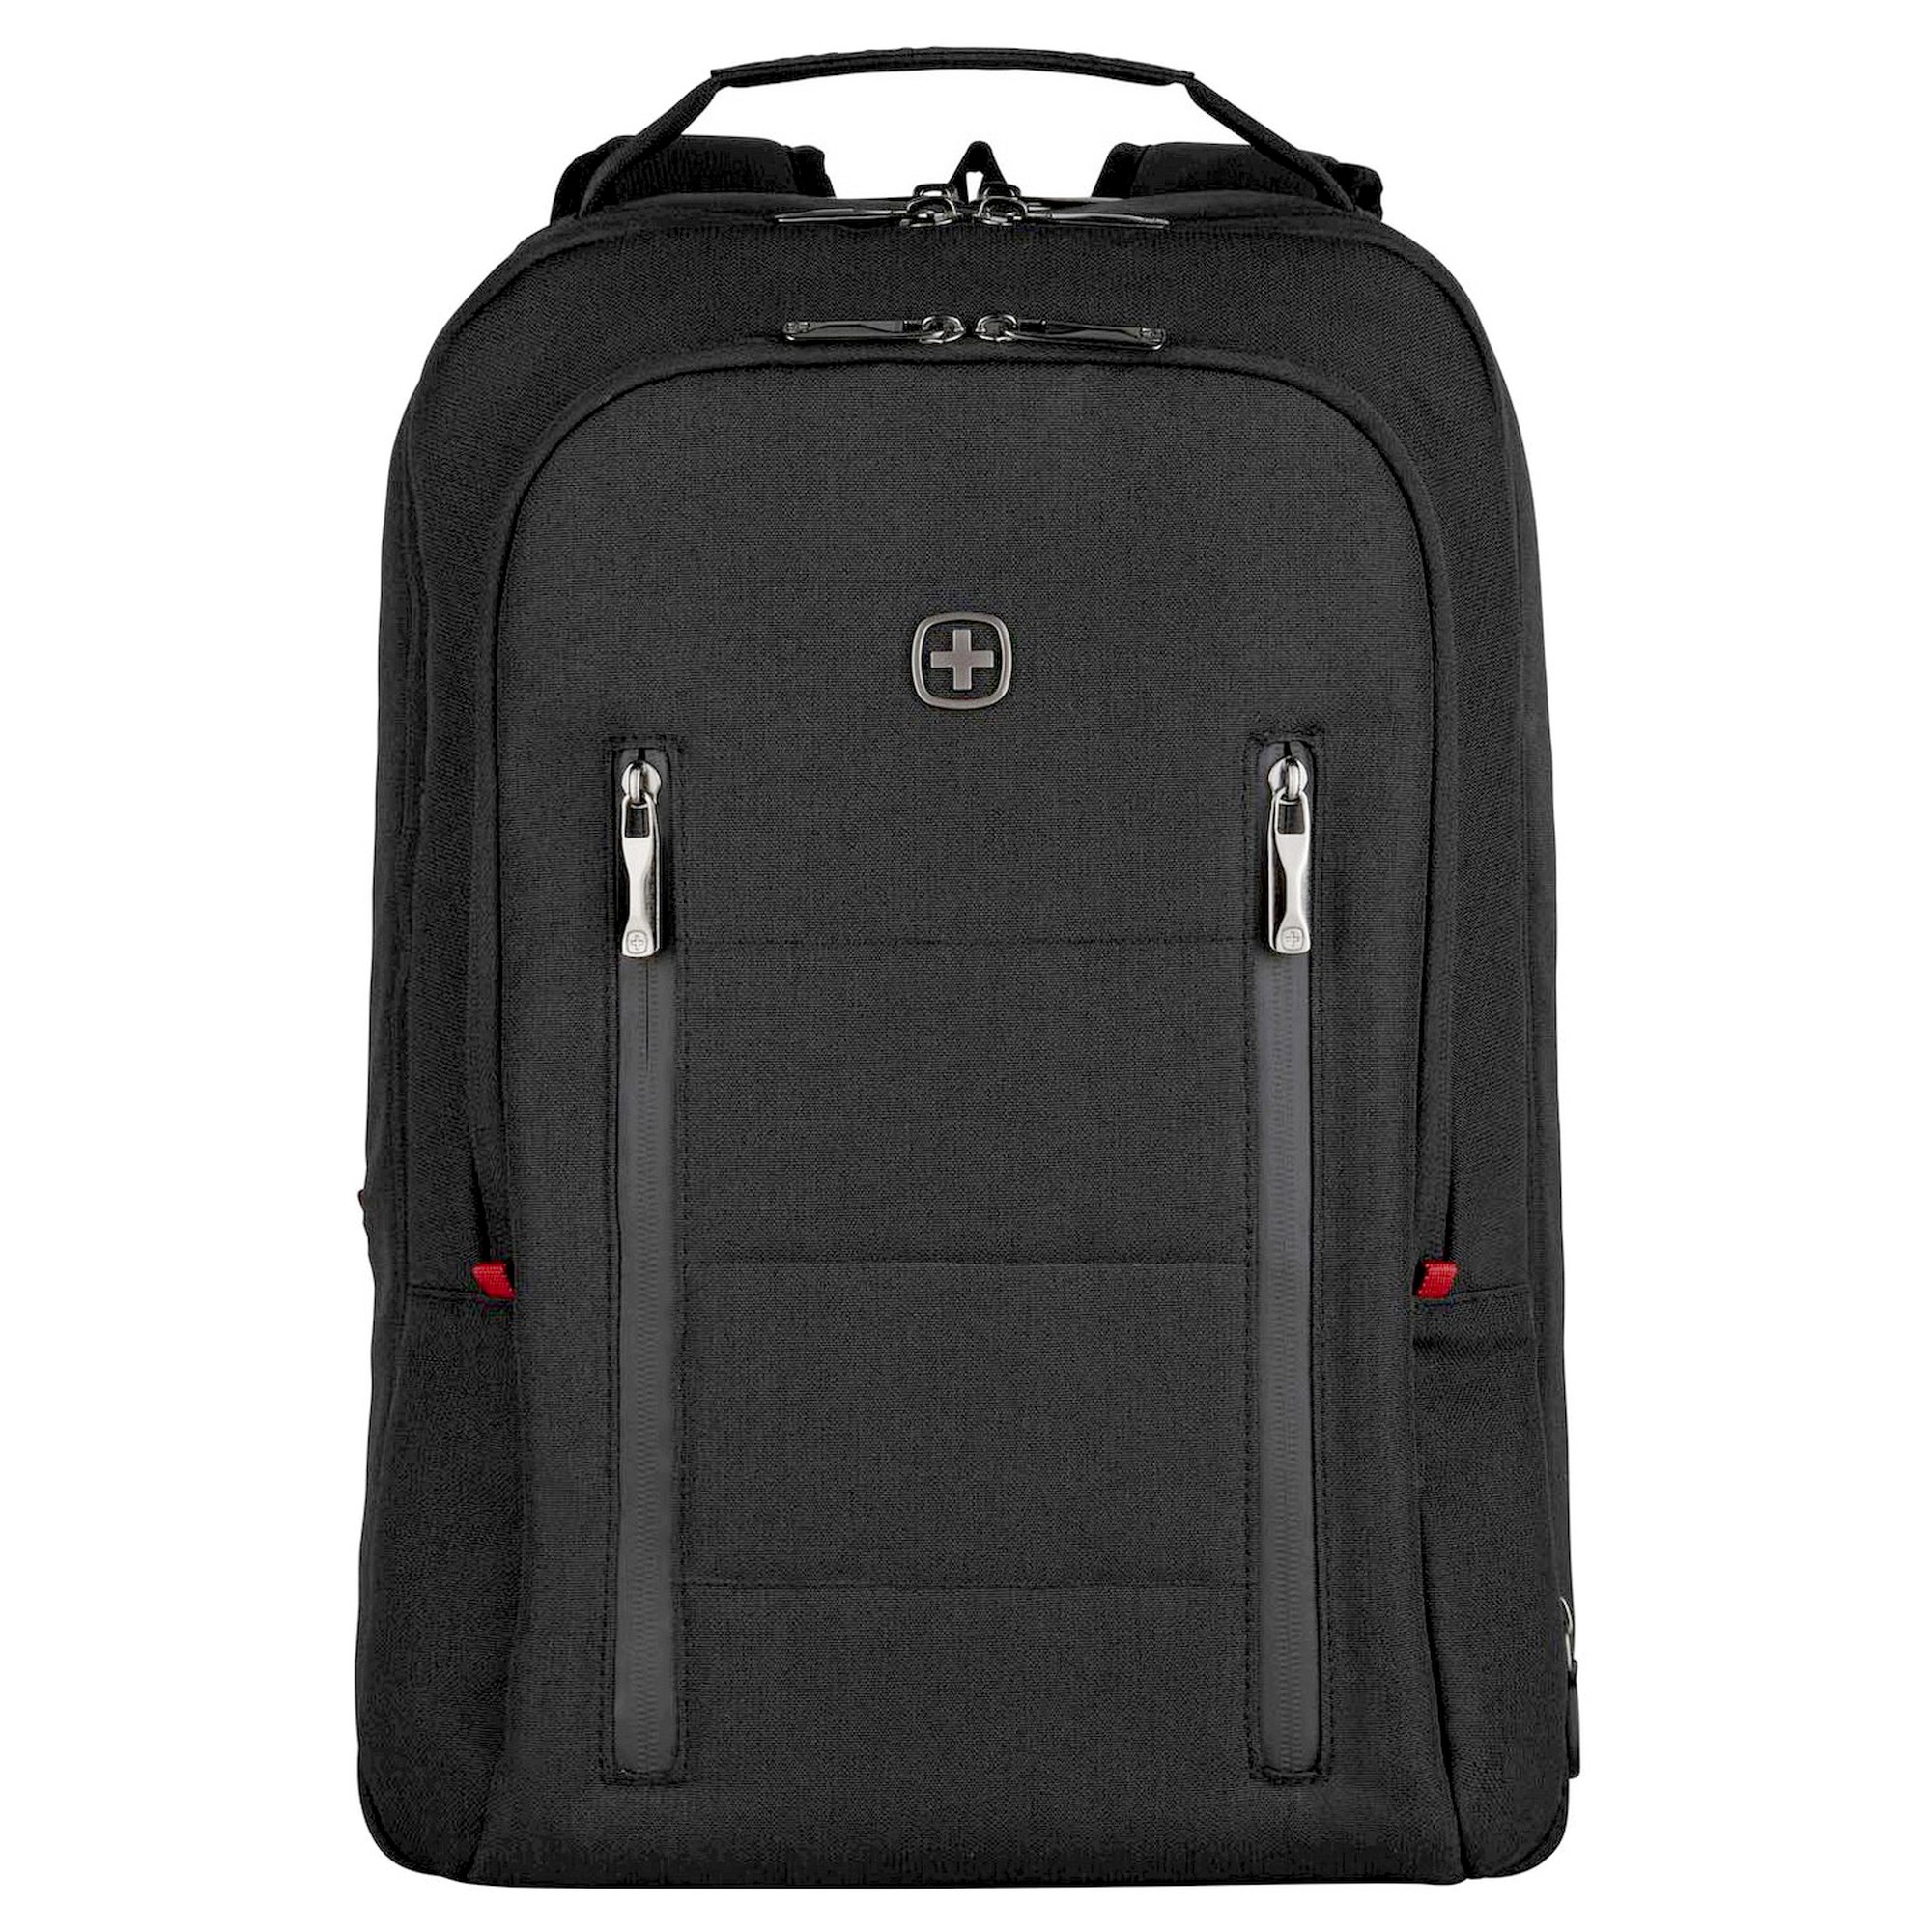 Сумка для ноутбука Wenger City Traveler 16 42 cm, черный сумка для ноутбука wenger reload 16 44 cm черный